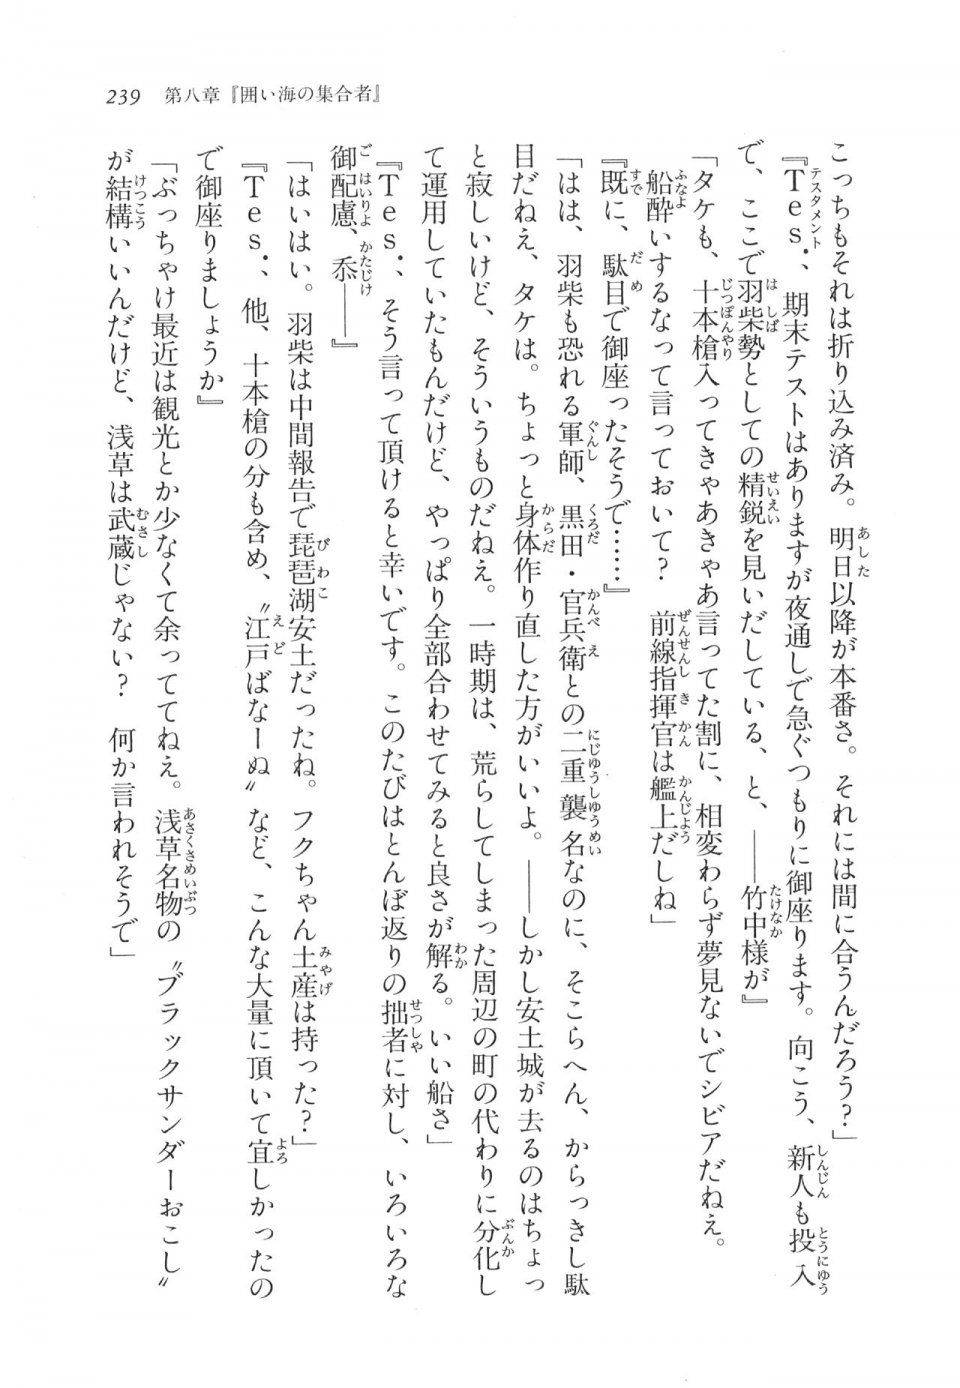 Kyoukai Senjou no Horizon LN Vol 11(5A) - Photo #239